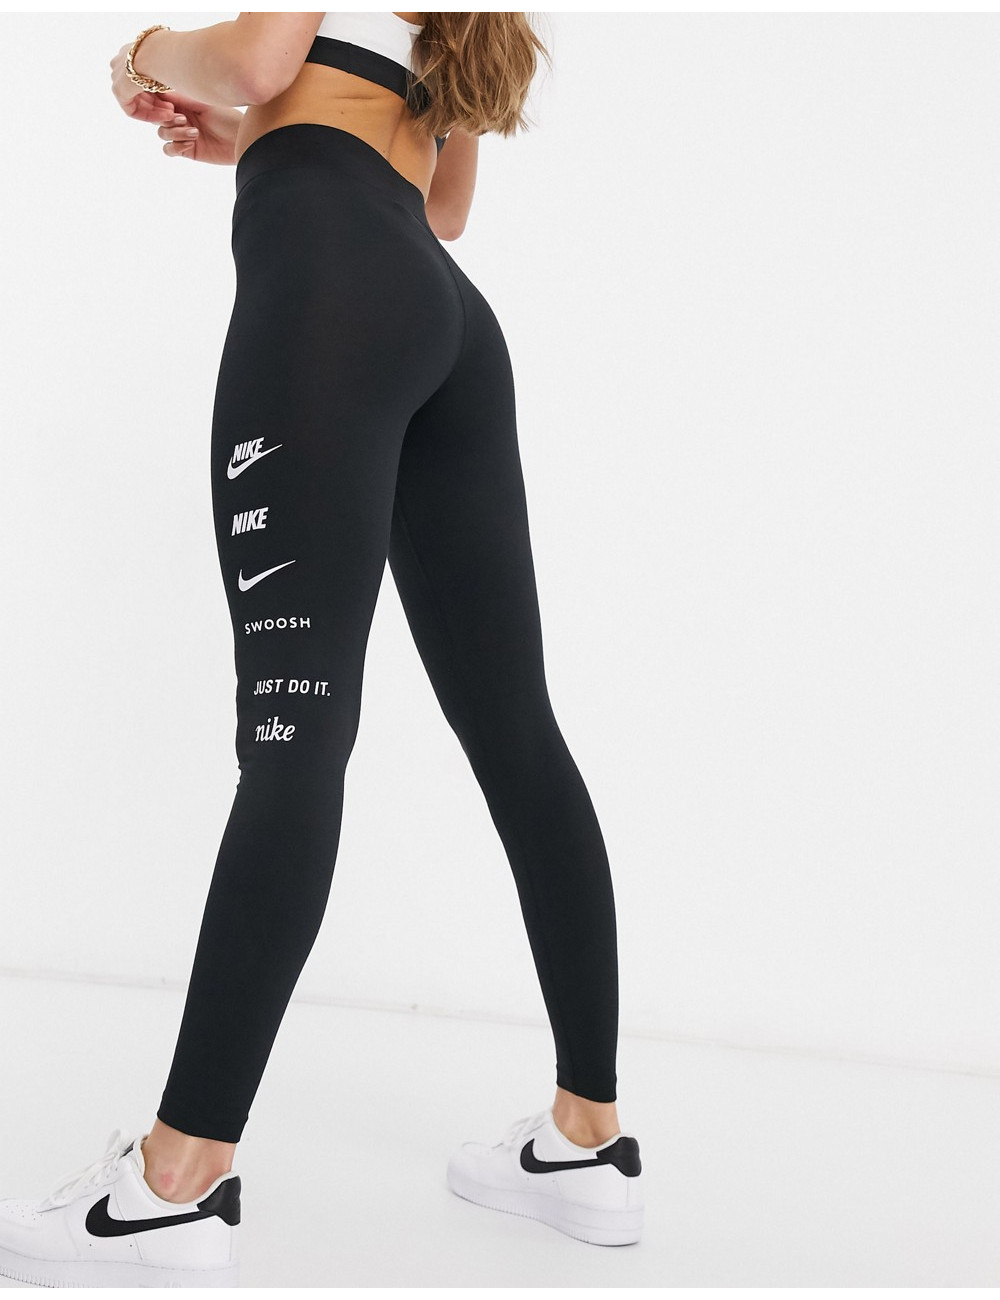 Nike leggings in black with...